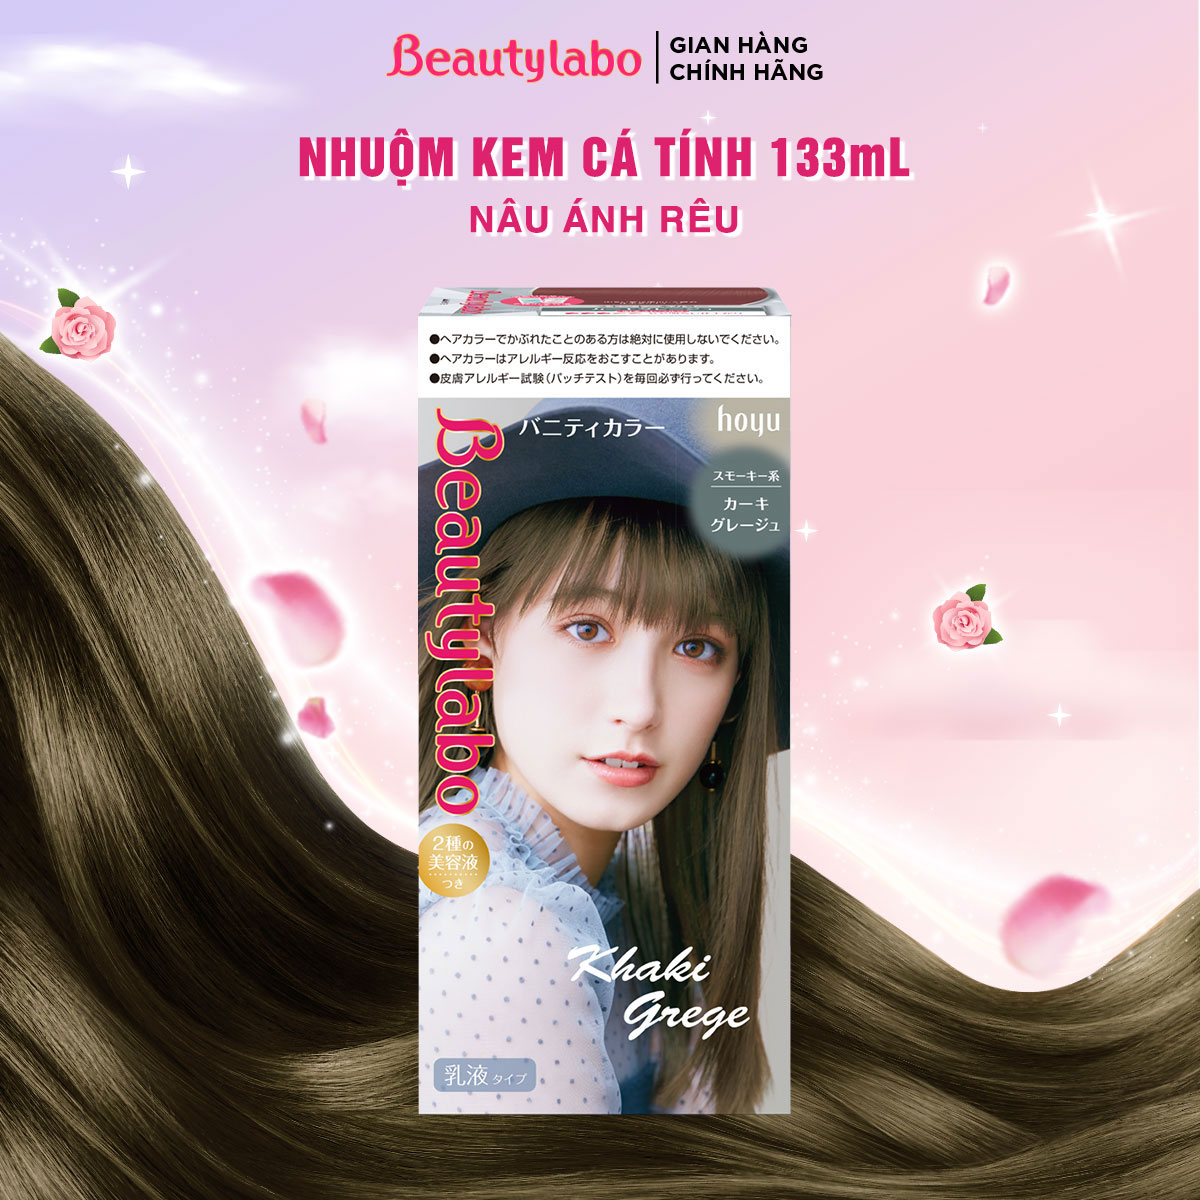 Thuốc nhuộm tóc tại nhà dạng kem Beautylabo Vanity 133ml - nhuộm dưỡng tóc mềm mượt chuẩn Nhật